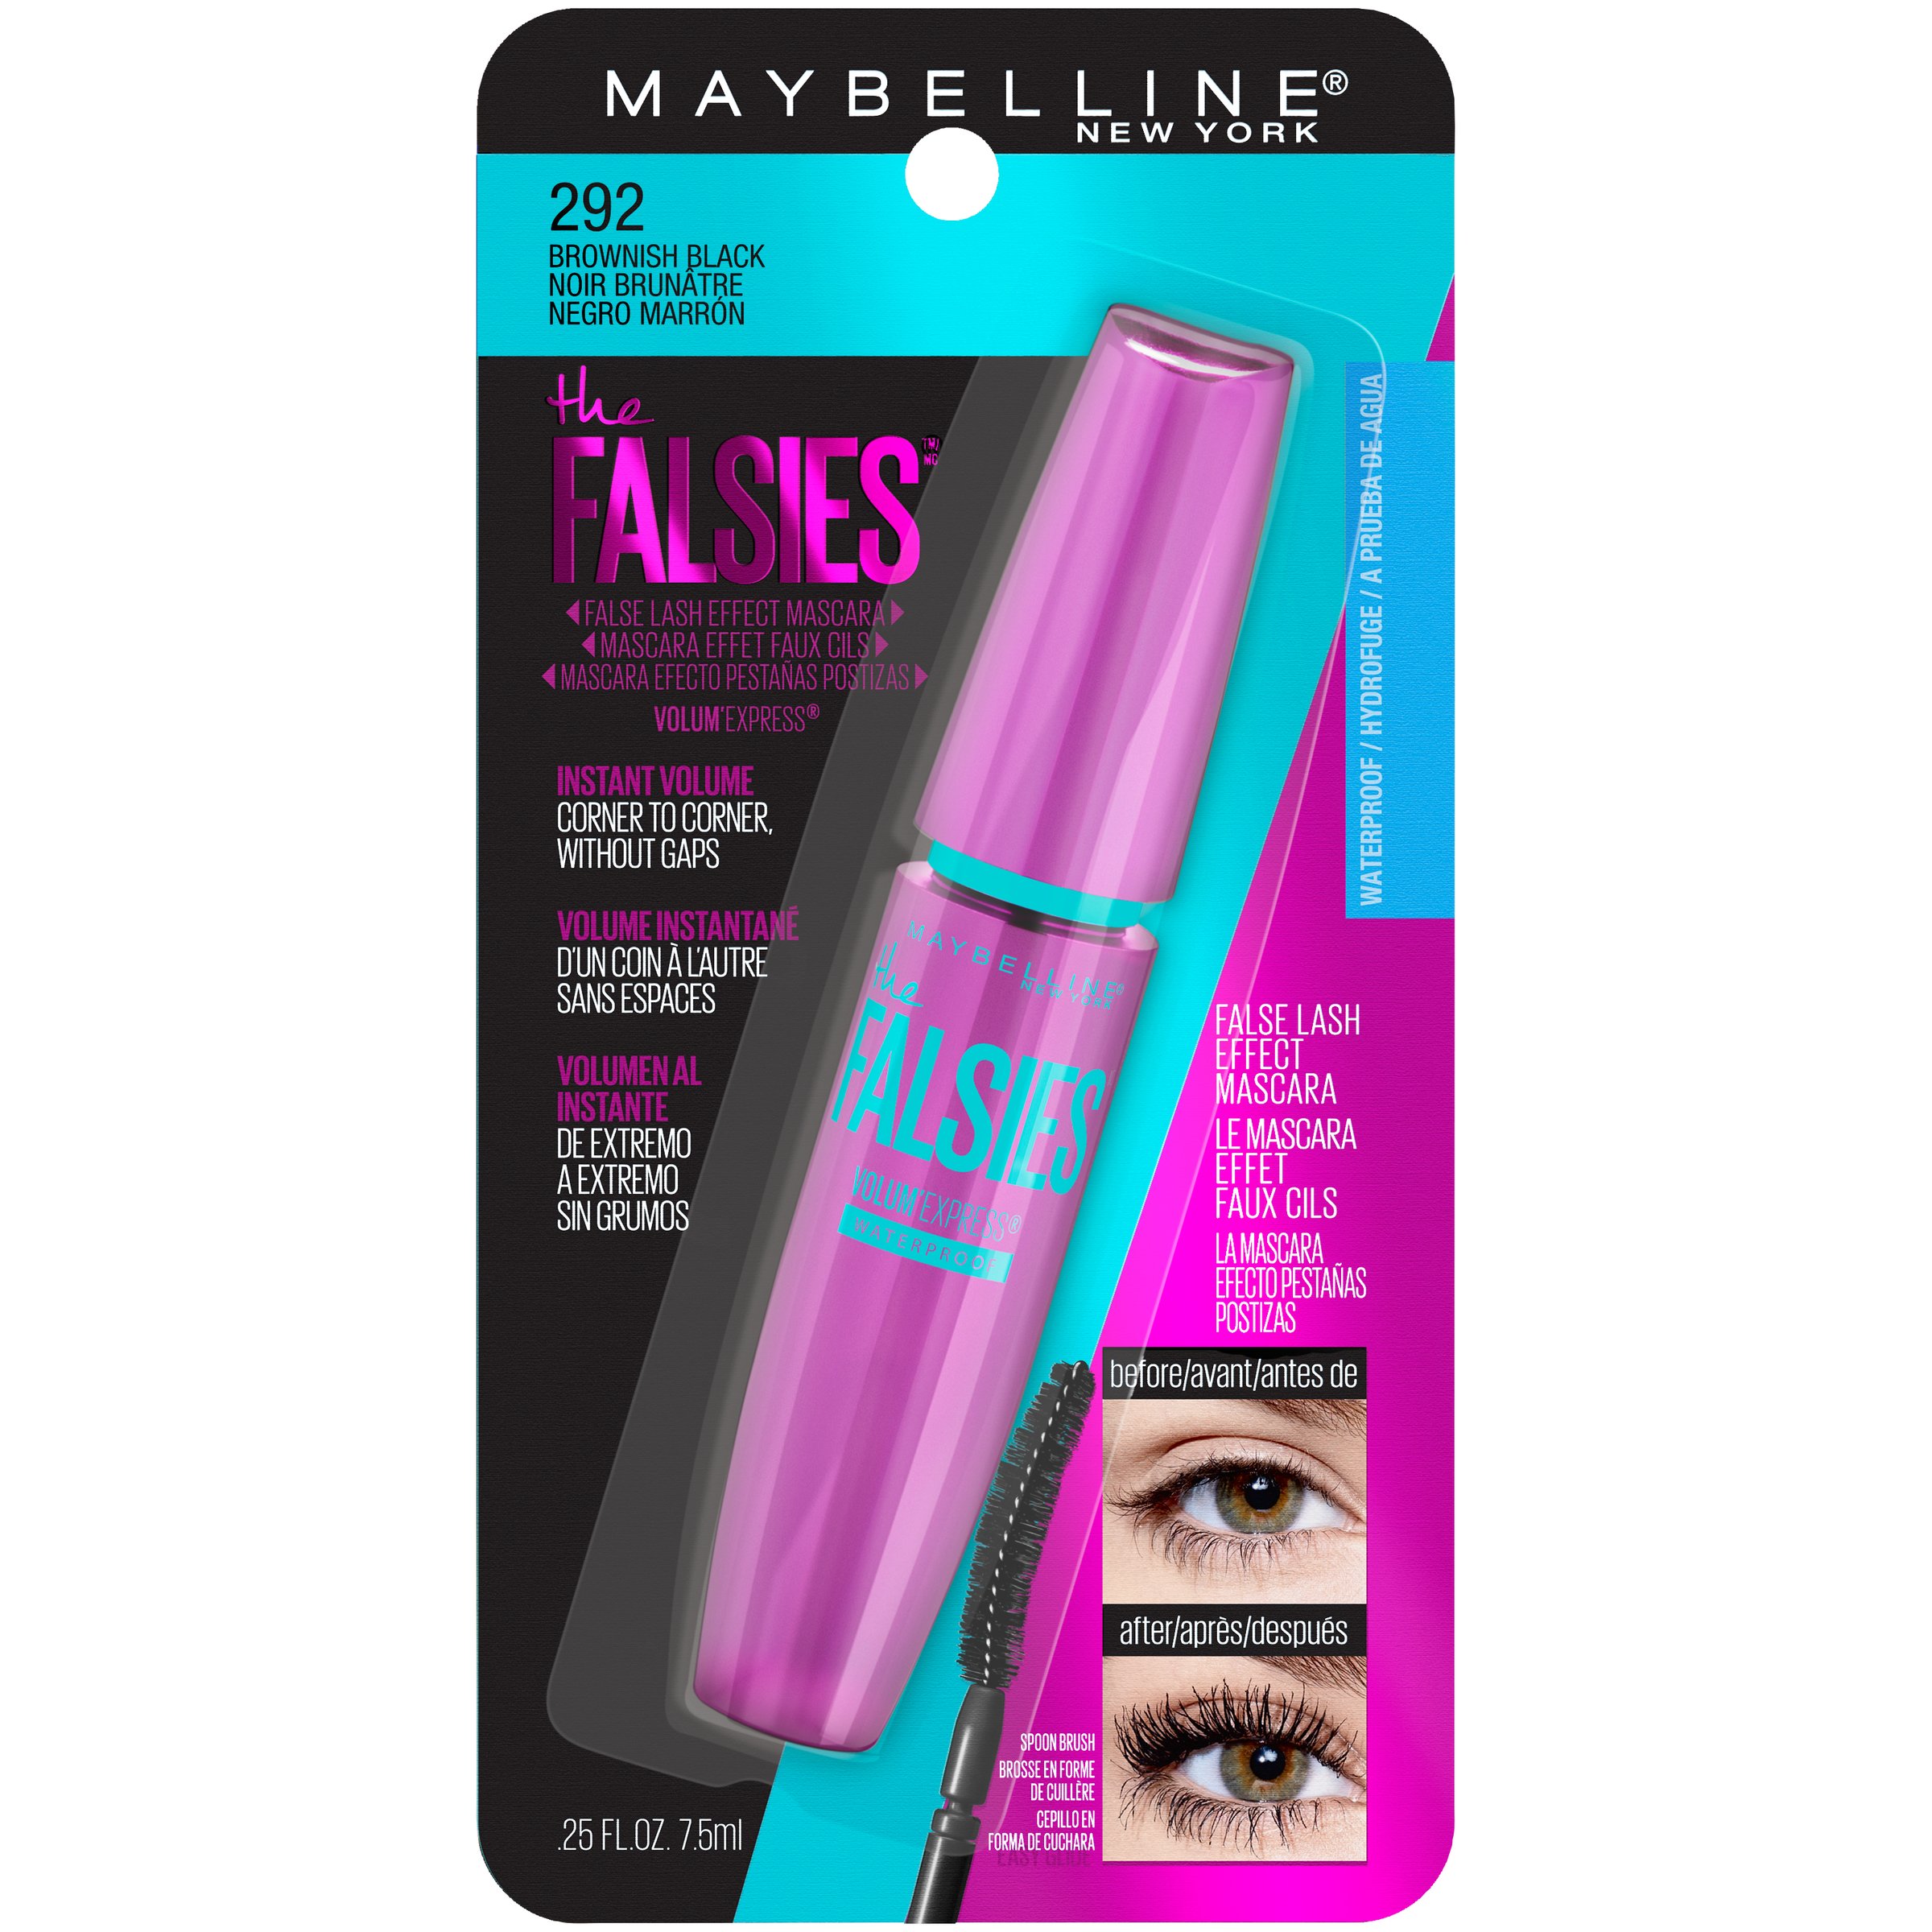 Is Maybelline the Falsies Mascara Waterproof? 2